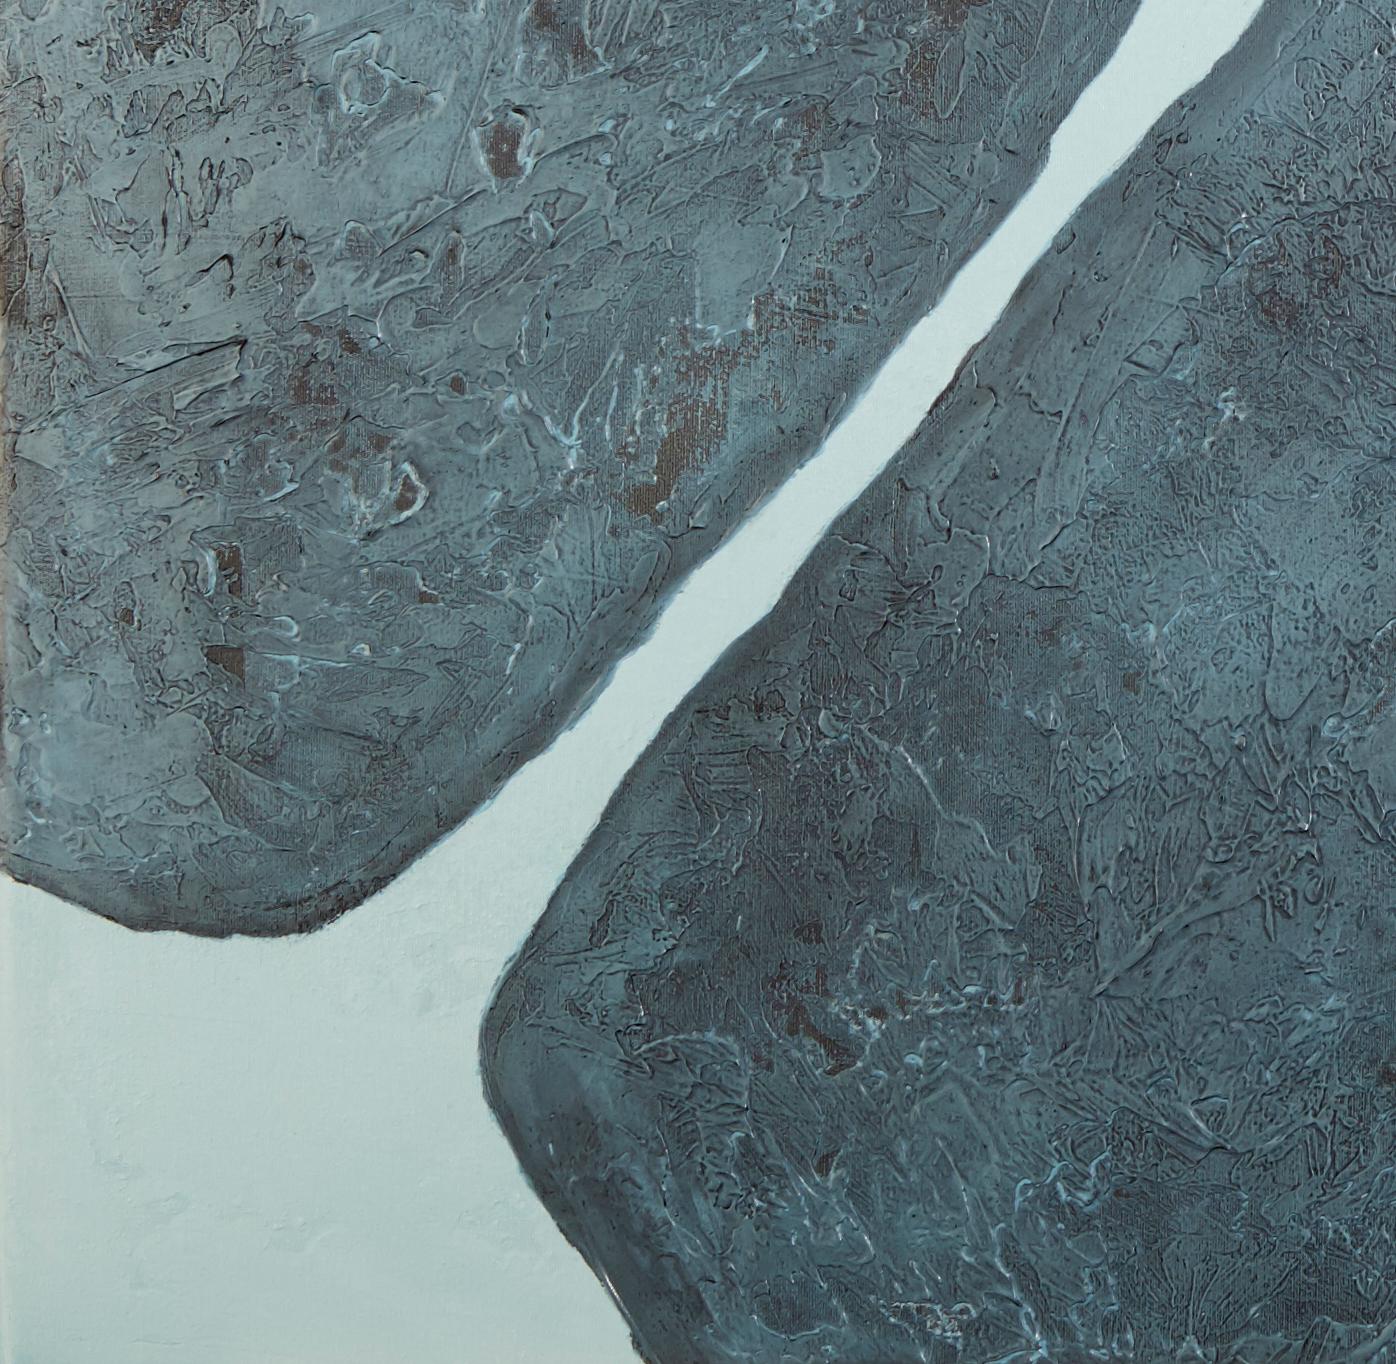 Pierres du XVIIIe siècle - XXIe siècle, contemporain, peinture abstraite, techniques mixtes - Painting de Jon Errazu